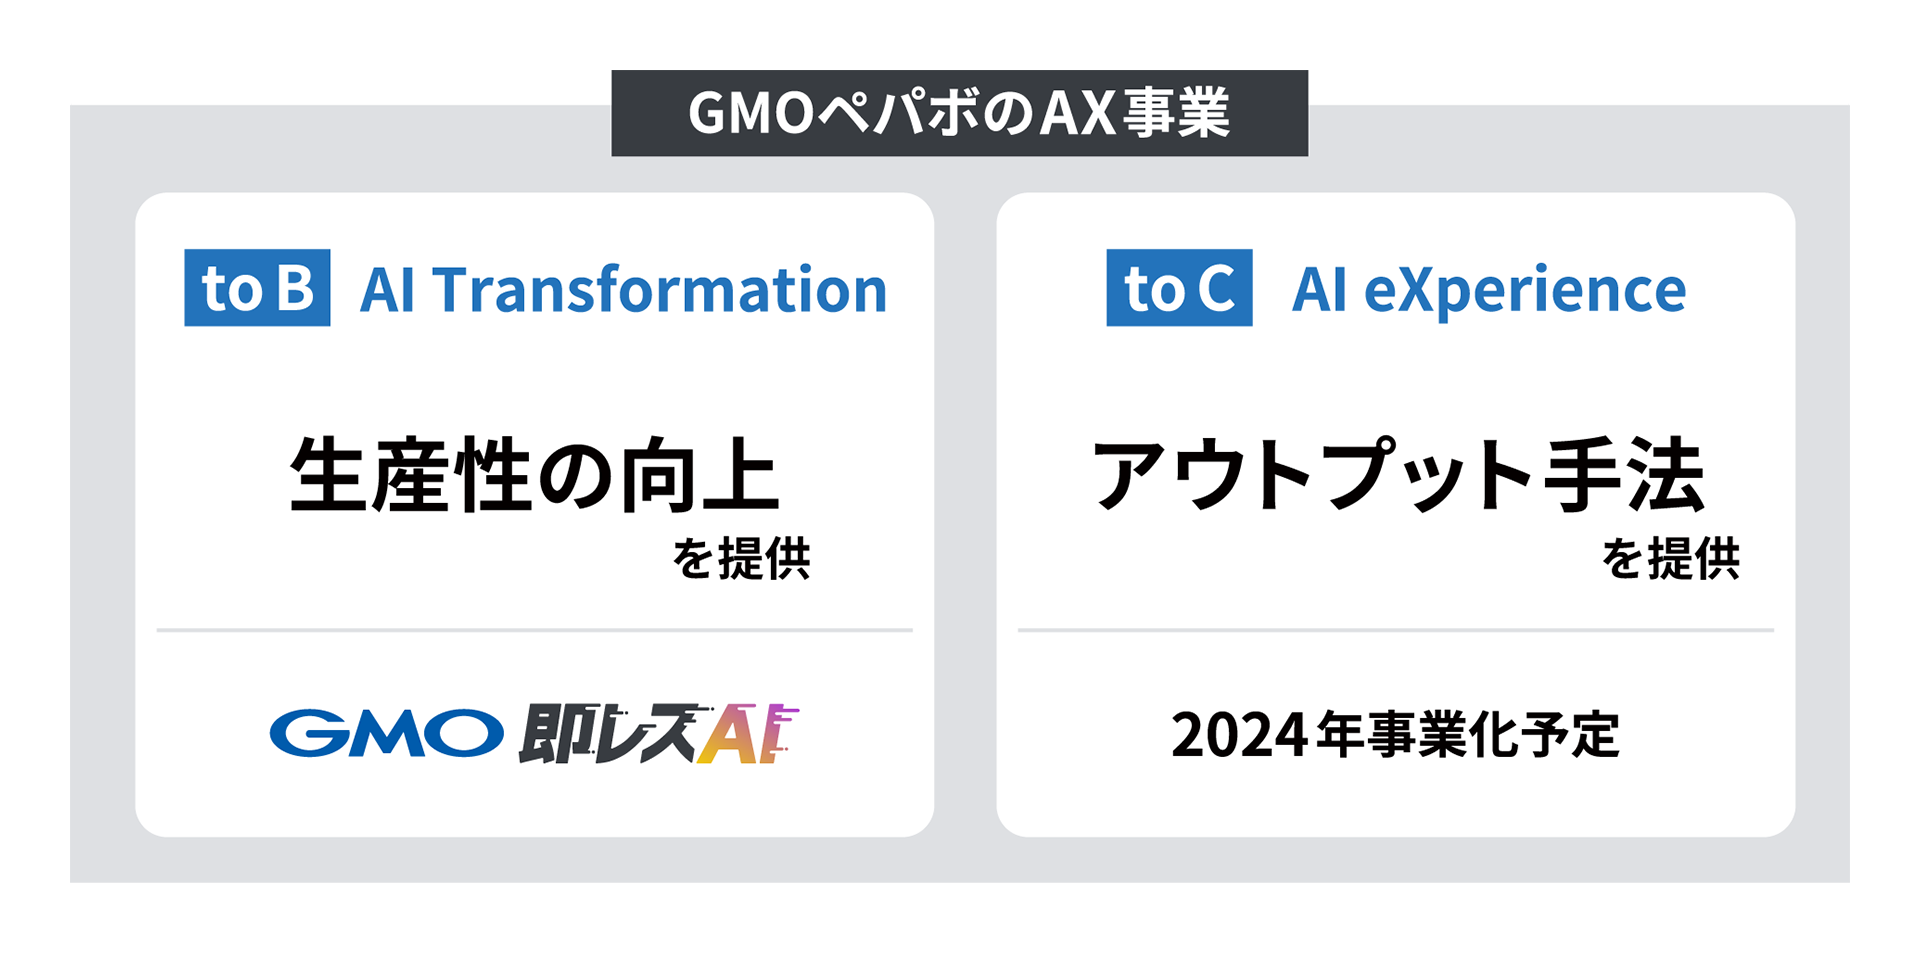 GMOペパボのAX事業について図式化した画像。toBに向けてはAI Transformation領域において生産性の向上を提供、toCに向けてはAI eXperience領域においてアウトプット手法を提供していき、この2軸でAX事業を展開していく。toB向けサービスとして今回GMO即レスAIを提供開始、toC向けについては2024年事業化予定。